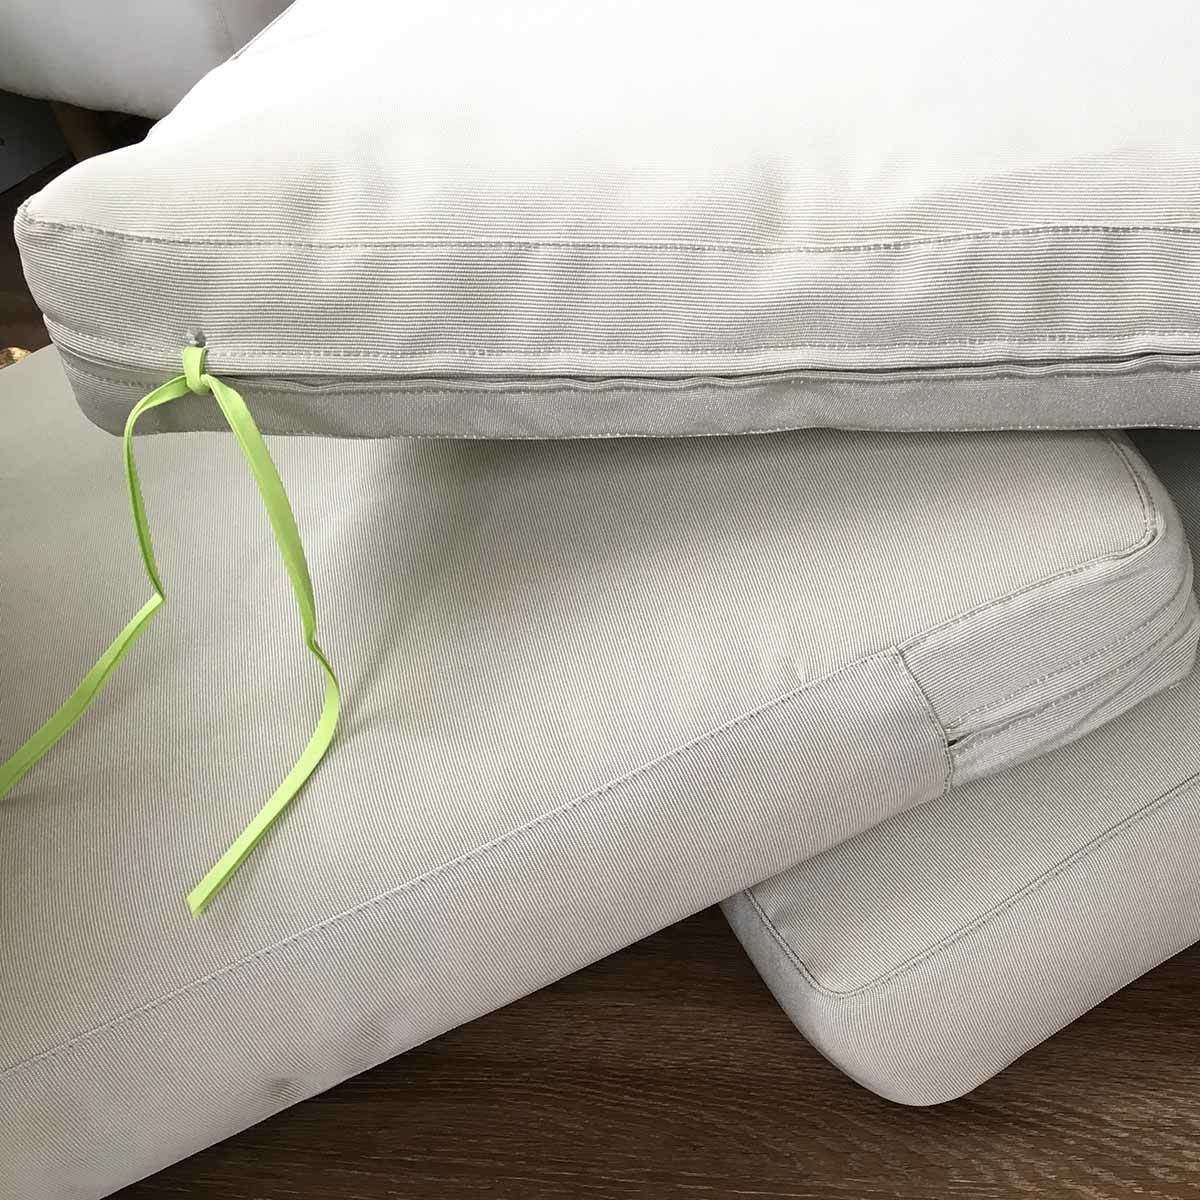 IKEA Hacks: Add Ties to Outdoor IKEA Patio Cushions